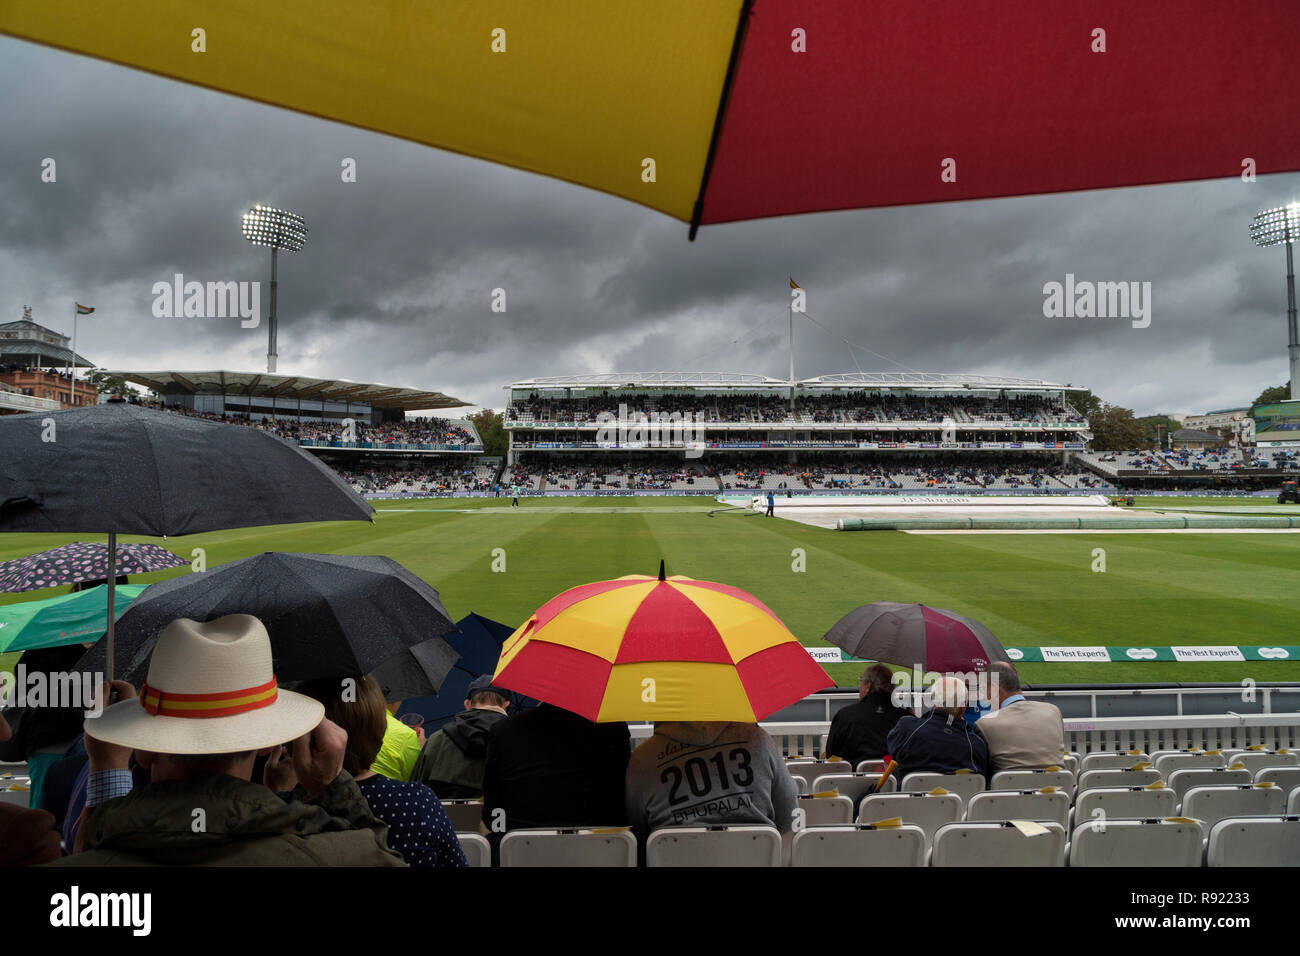 Dans le cadre du CMC et des oeufs bacon distinctif abri couleurs de spectateurs une lourde averse pendant l'Angleterre v l'Inde 2018 test match Banque D'Images